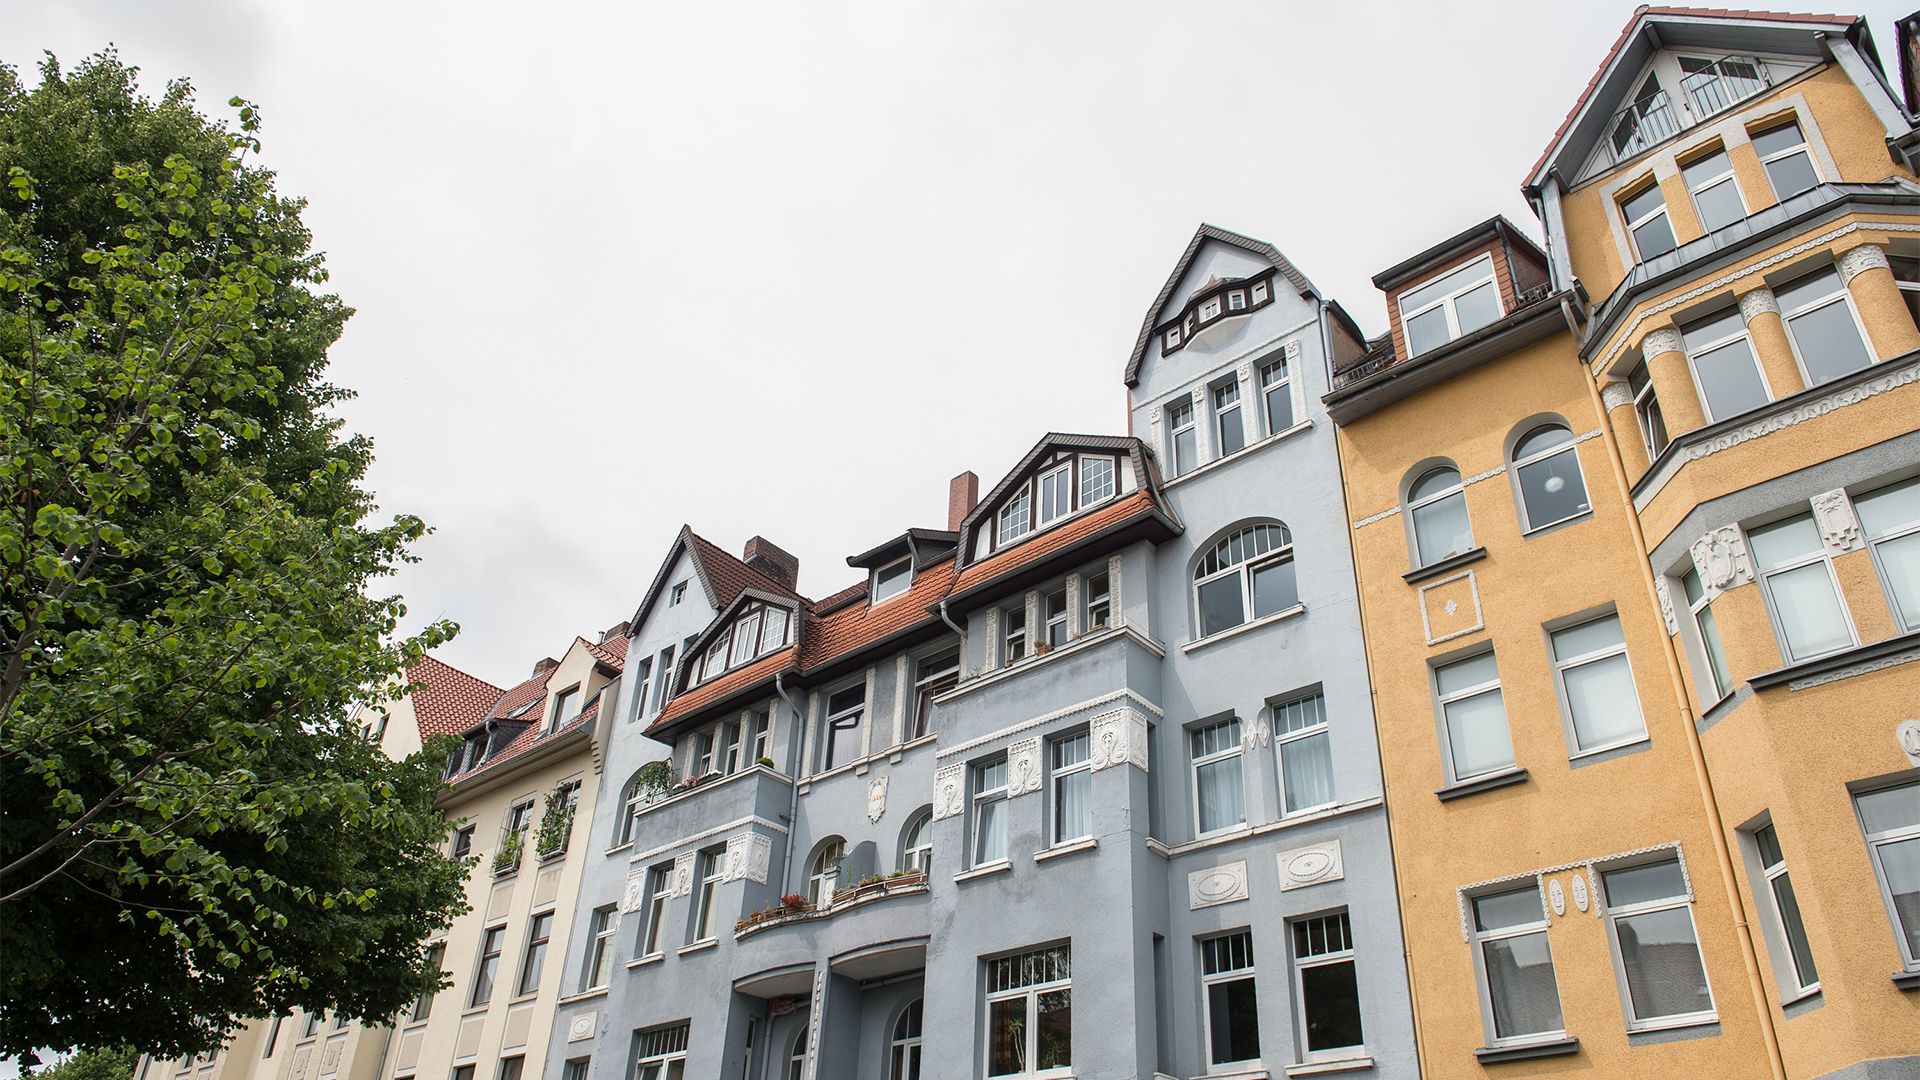 Wohnhäuser im Stadtteil Vahrenwald-List in Hannover  | dpa